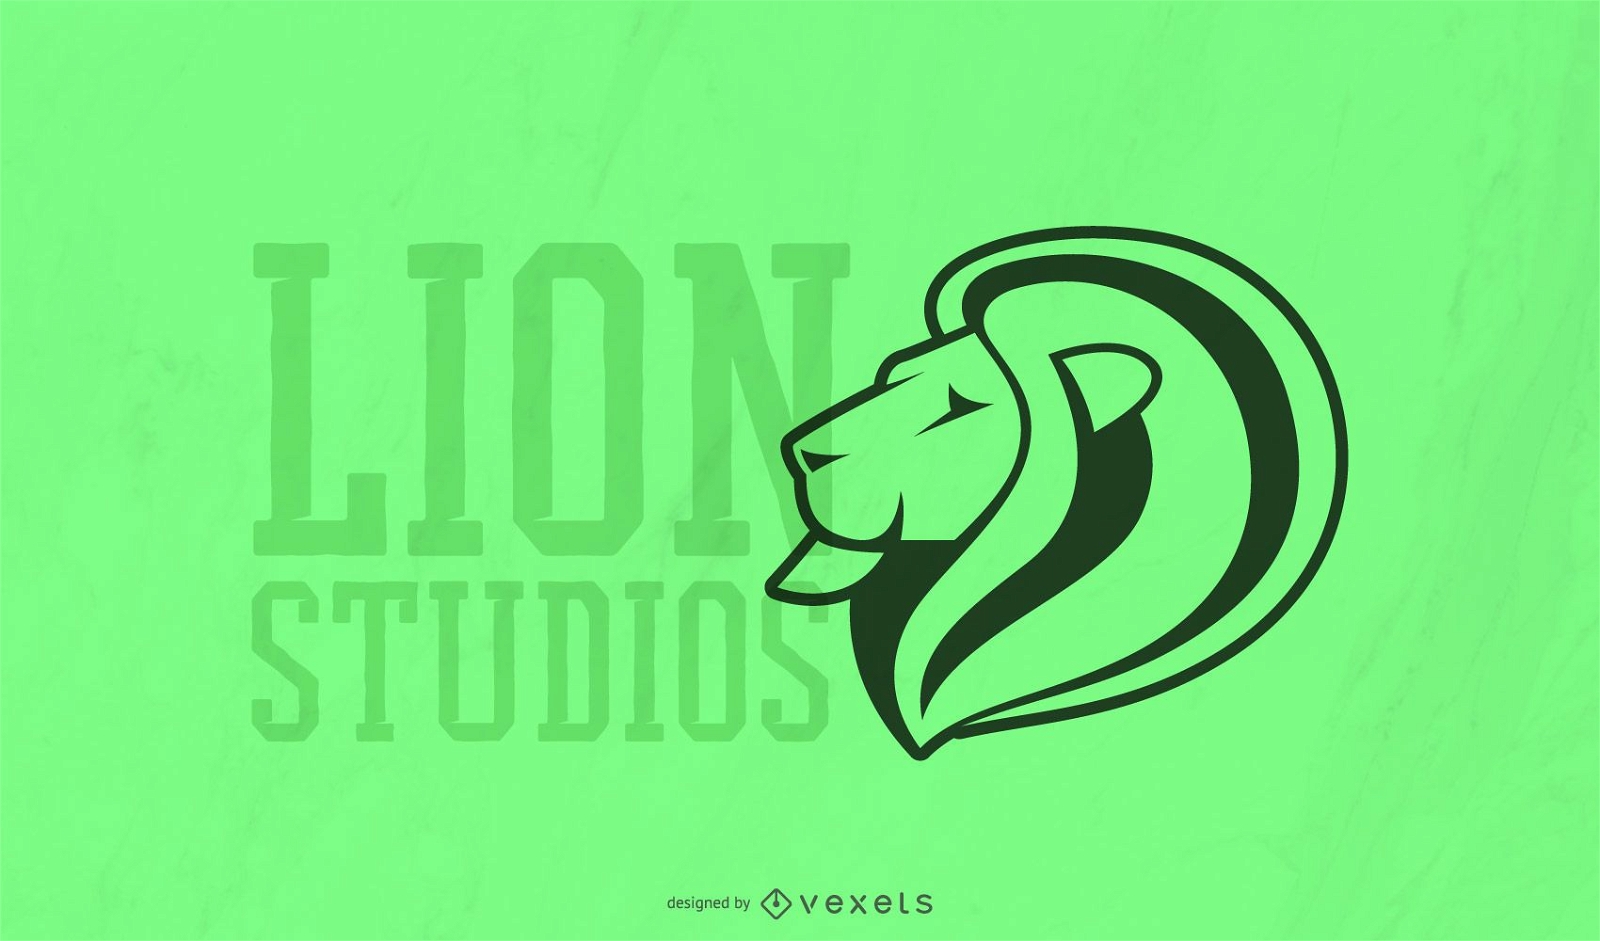 Plantilla de logotipo de lion studios